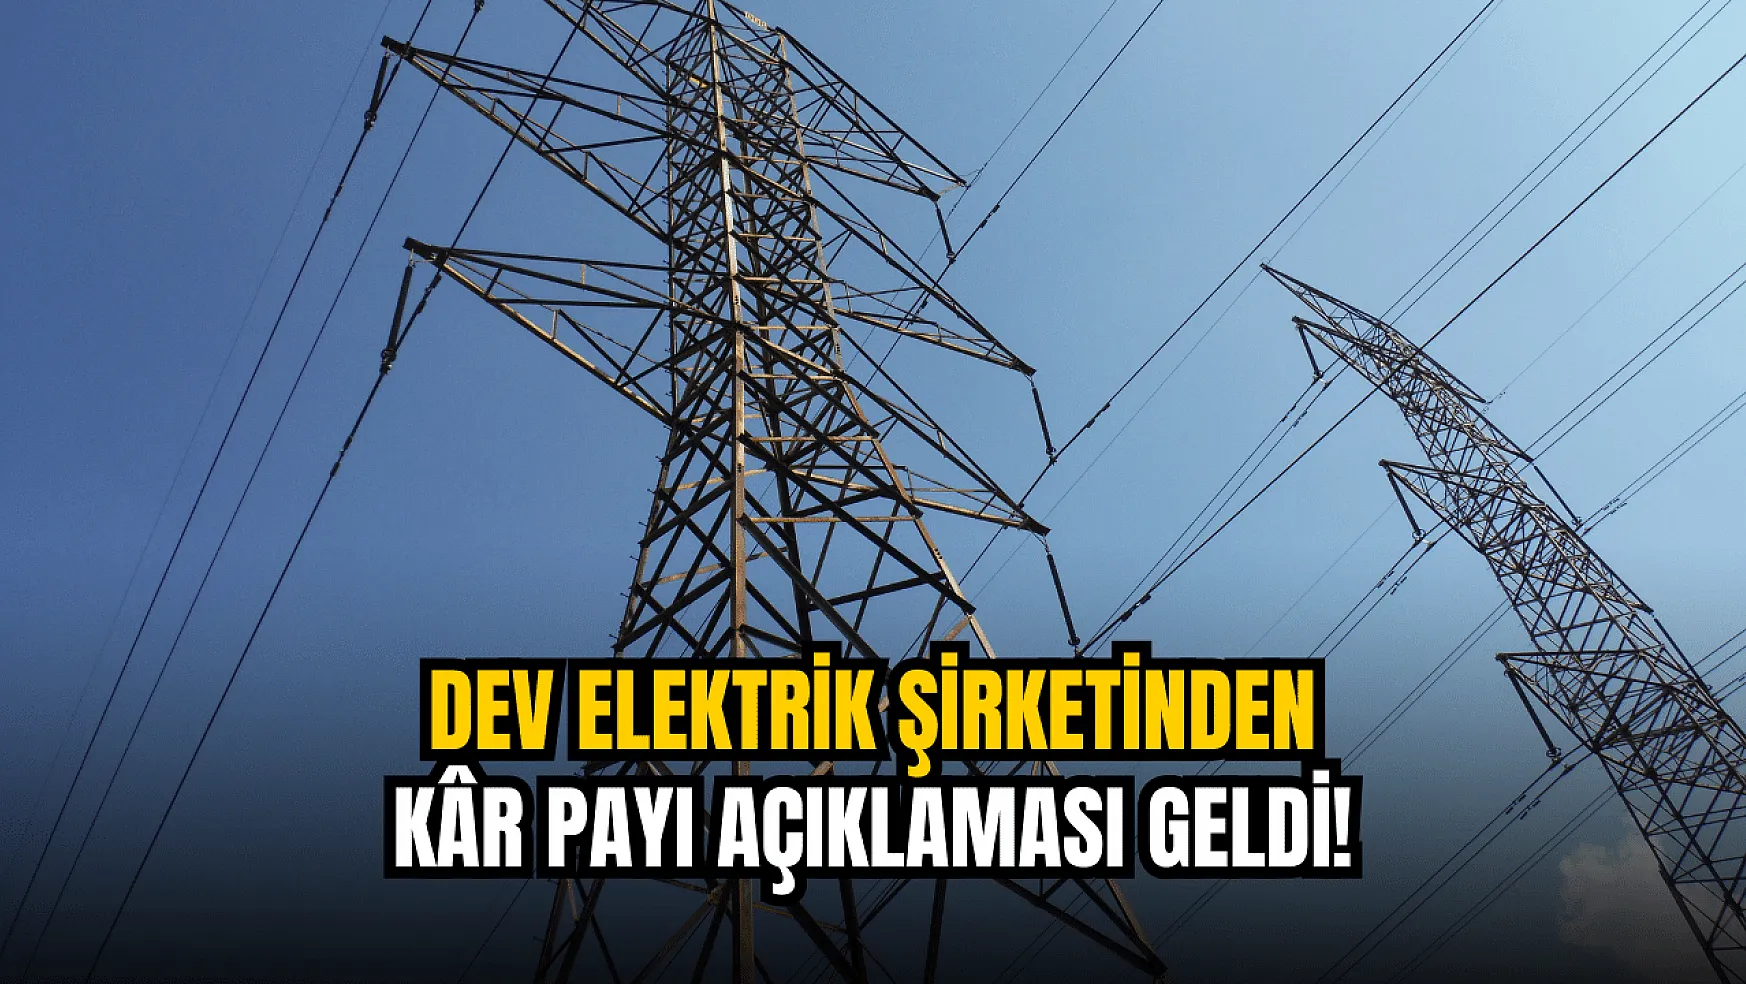 Dev elektrik şirketi, kâr payı kararını açıkladı!